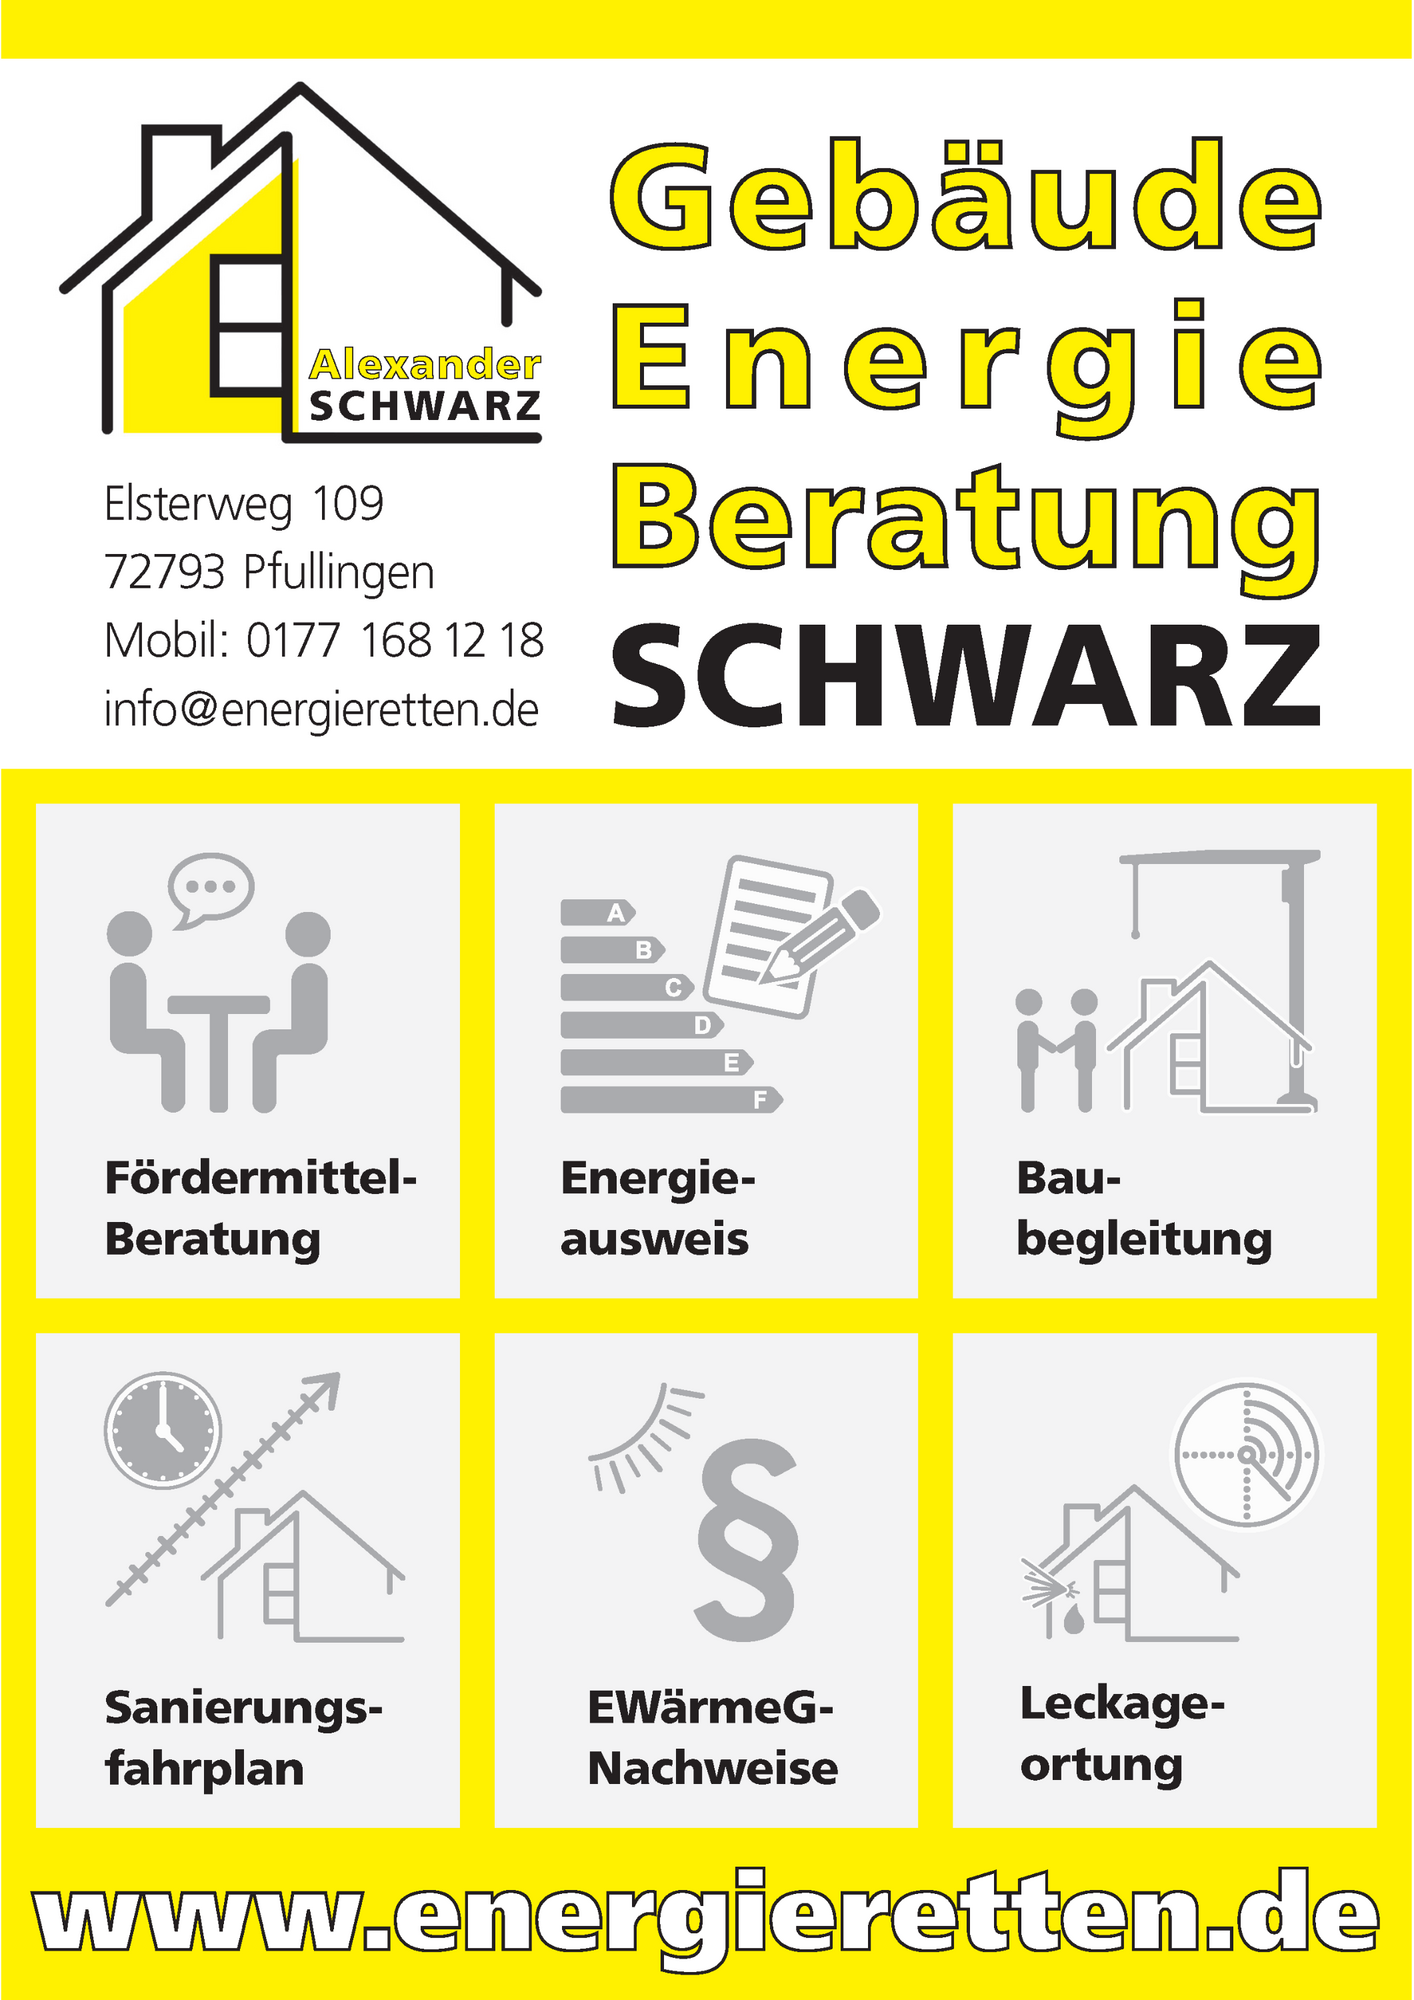 Bild 17 Gebäude-Energie-Beratung | Energieberatung - Energieberater Alexander Schwarz in Pfullingen